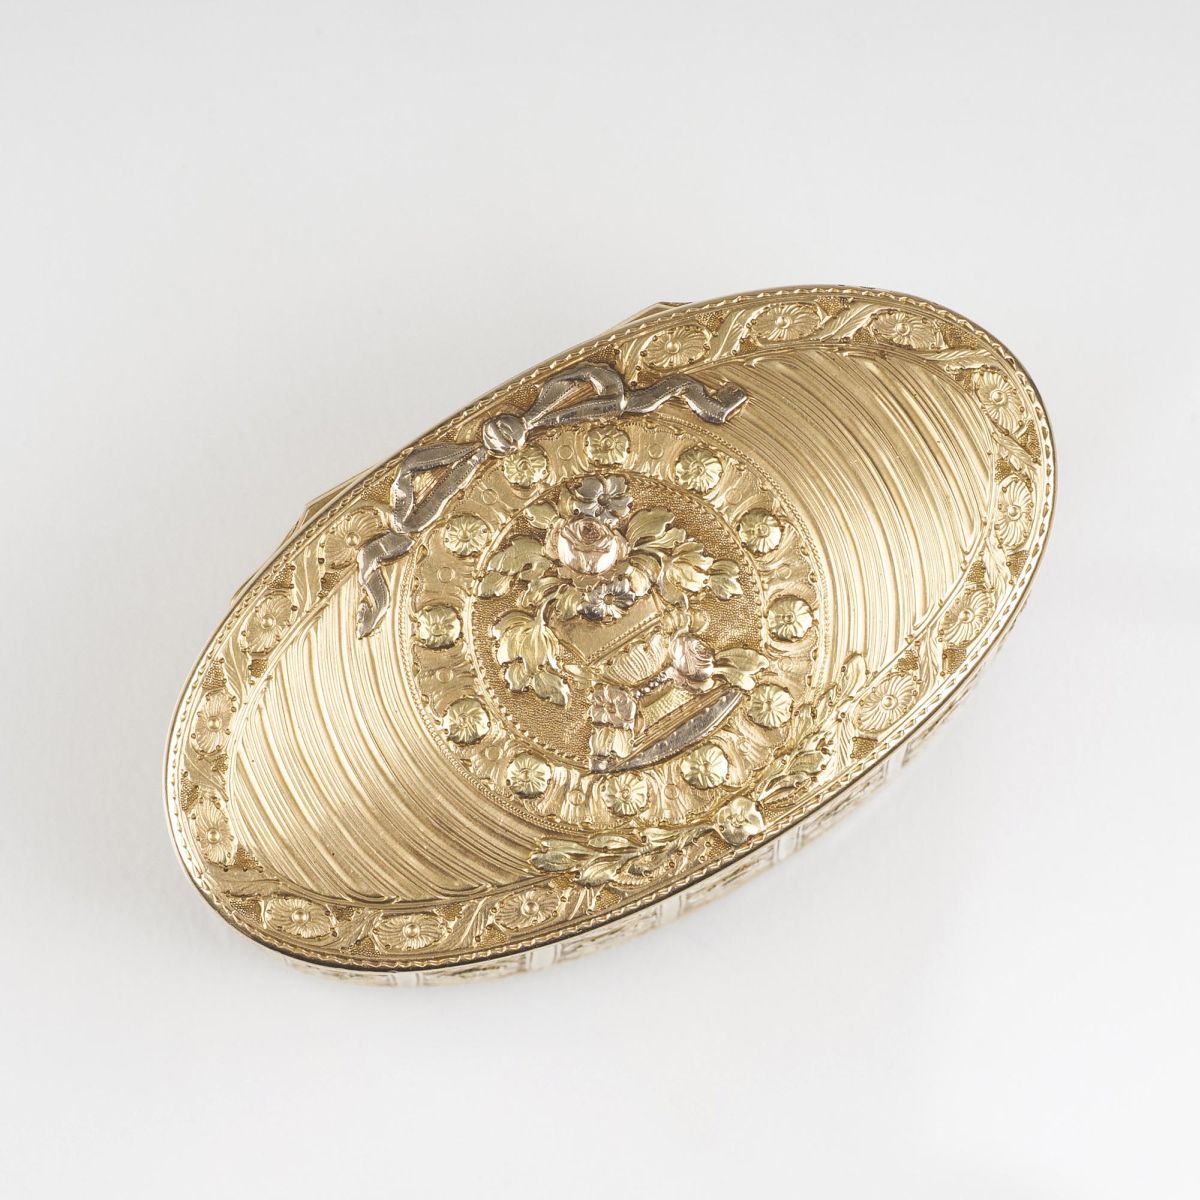 A very fine Louis-Quinze Gold Tabatière - image 2